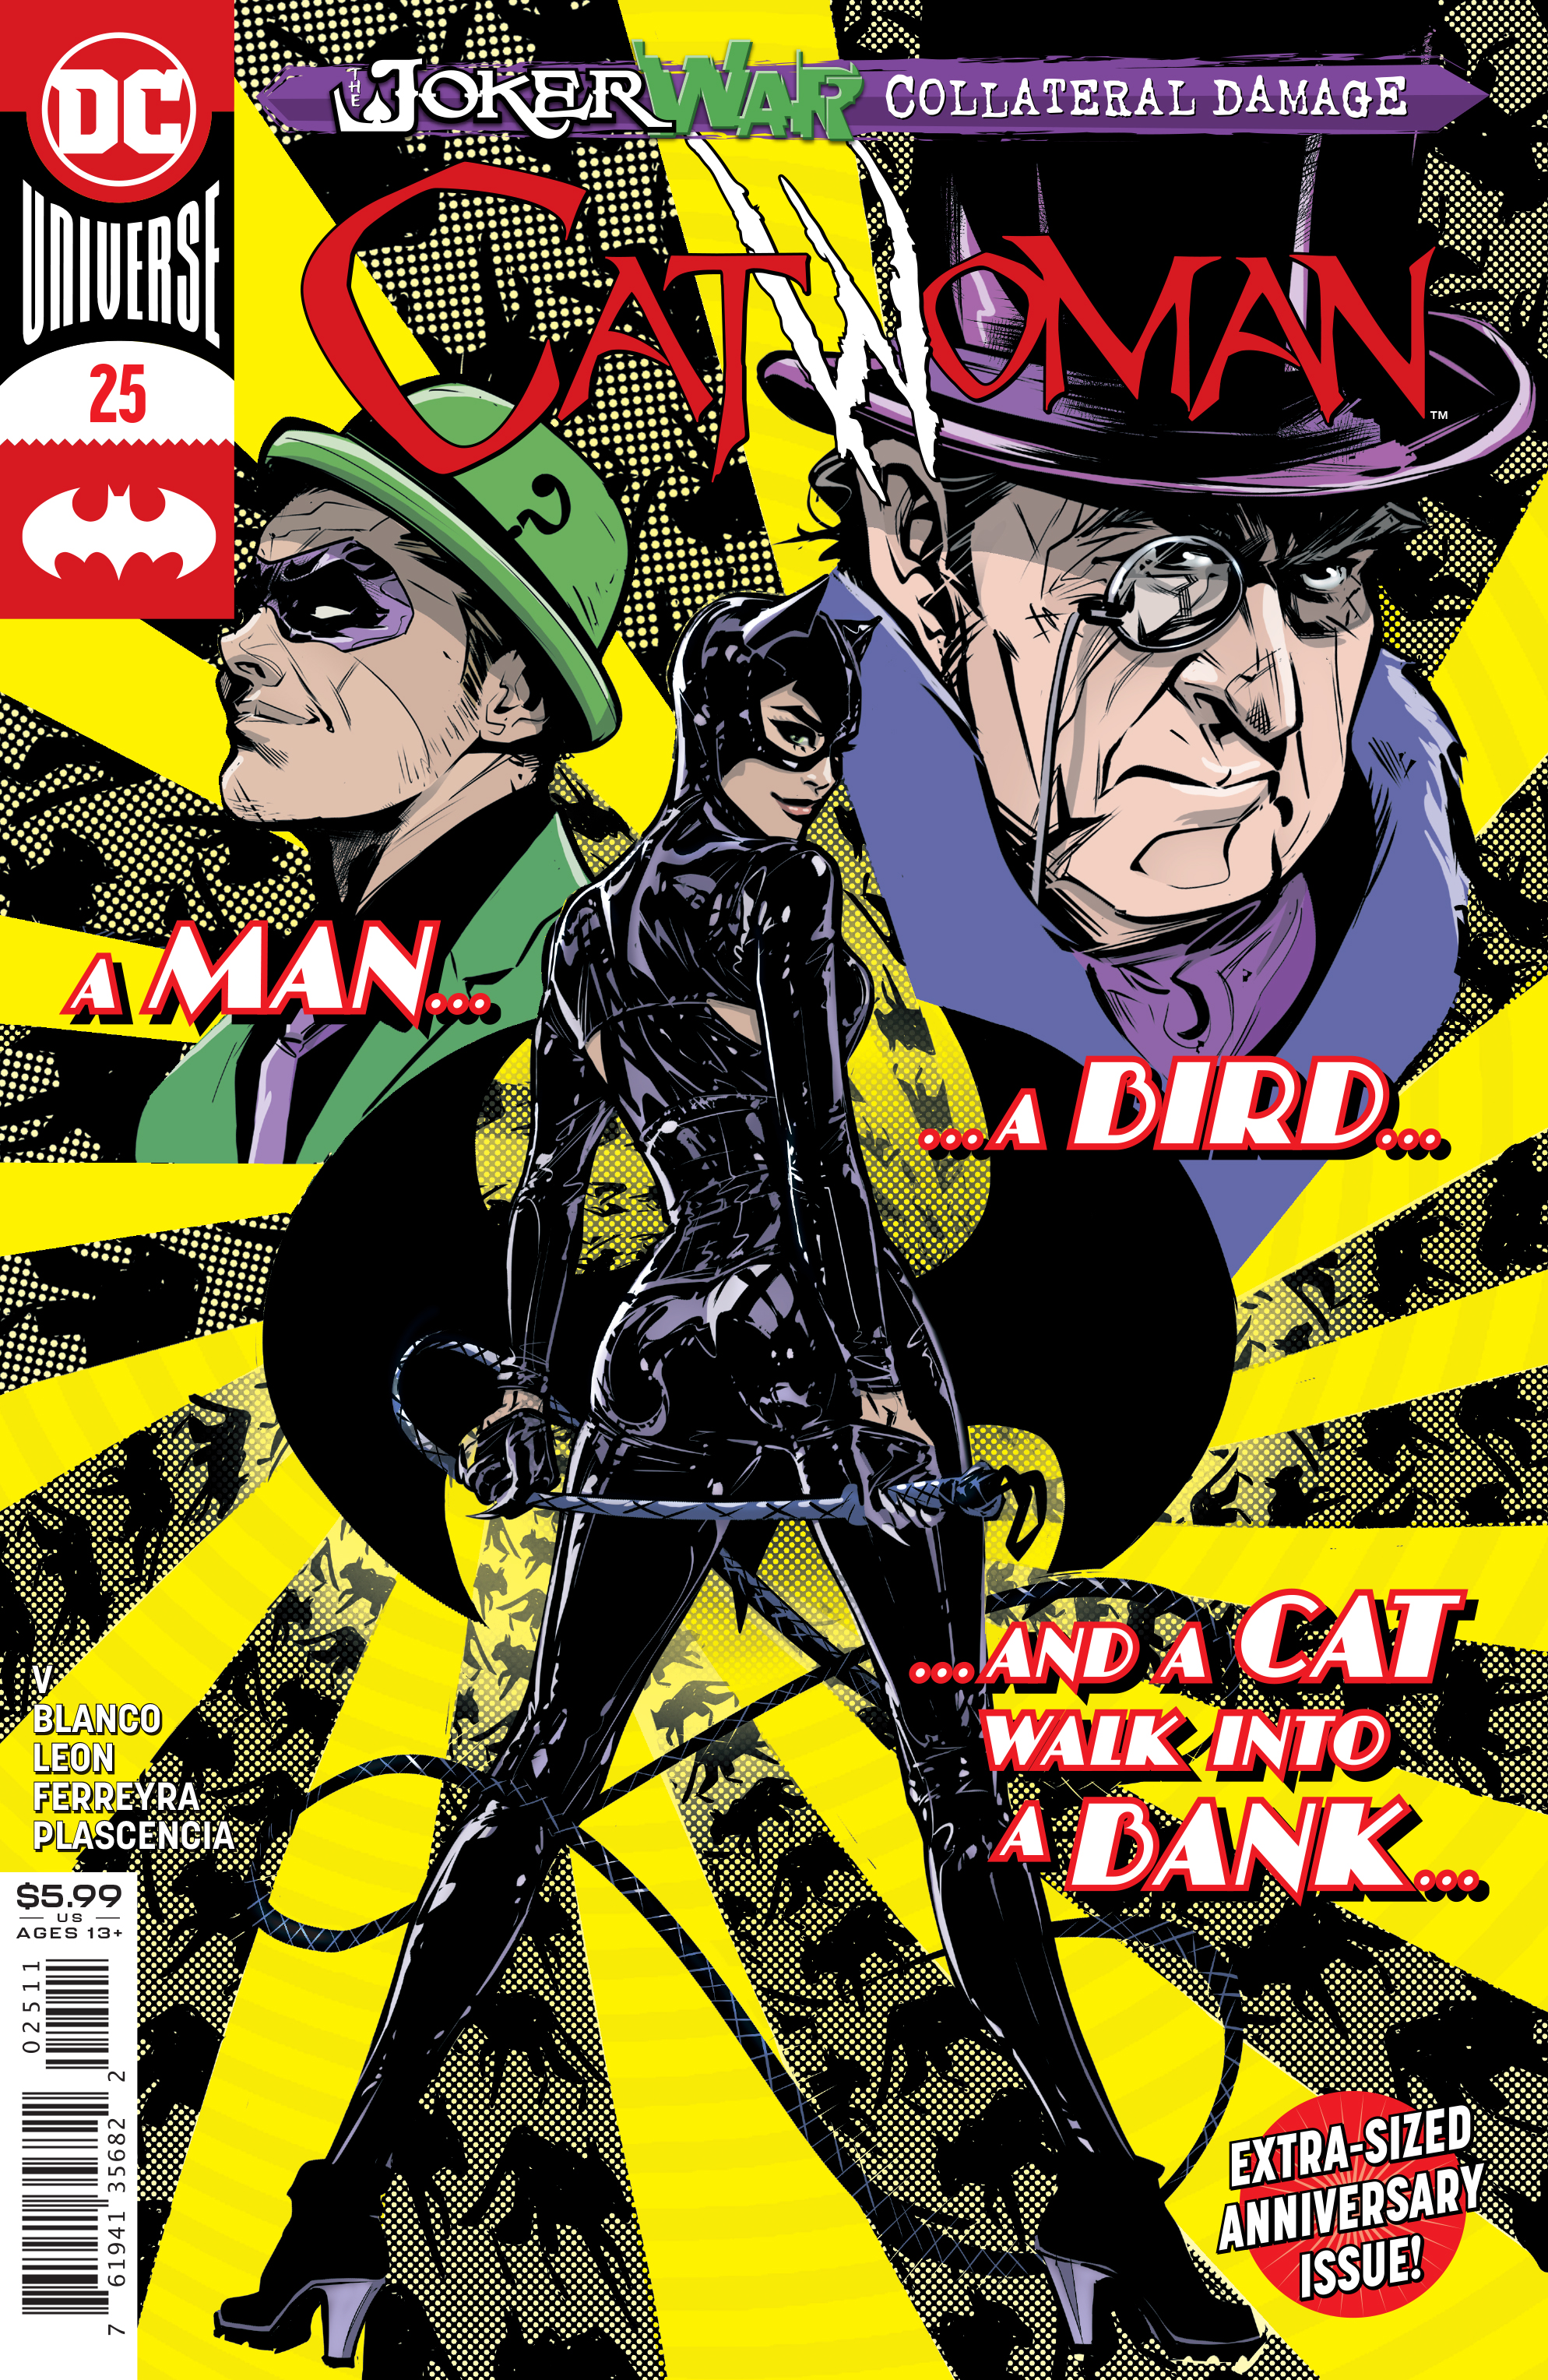 Catwoman #25 Cover A Joelle Jones (Joker War) (2018)